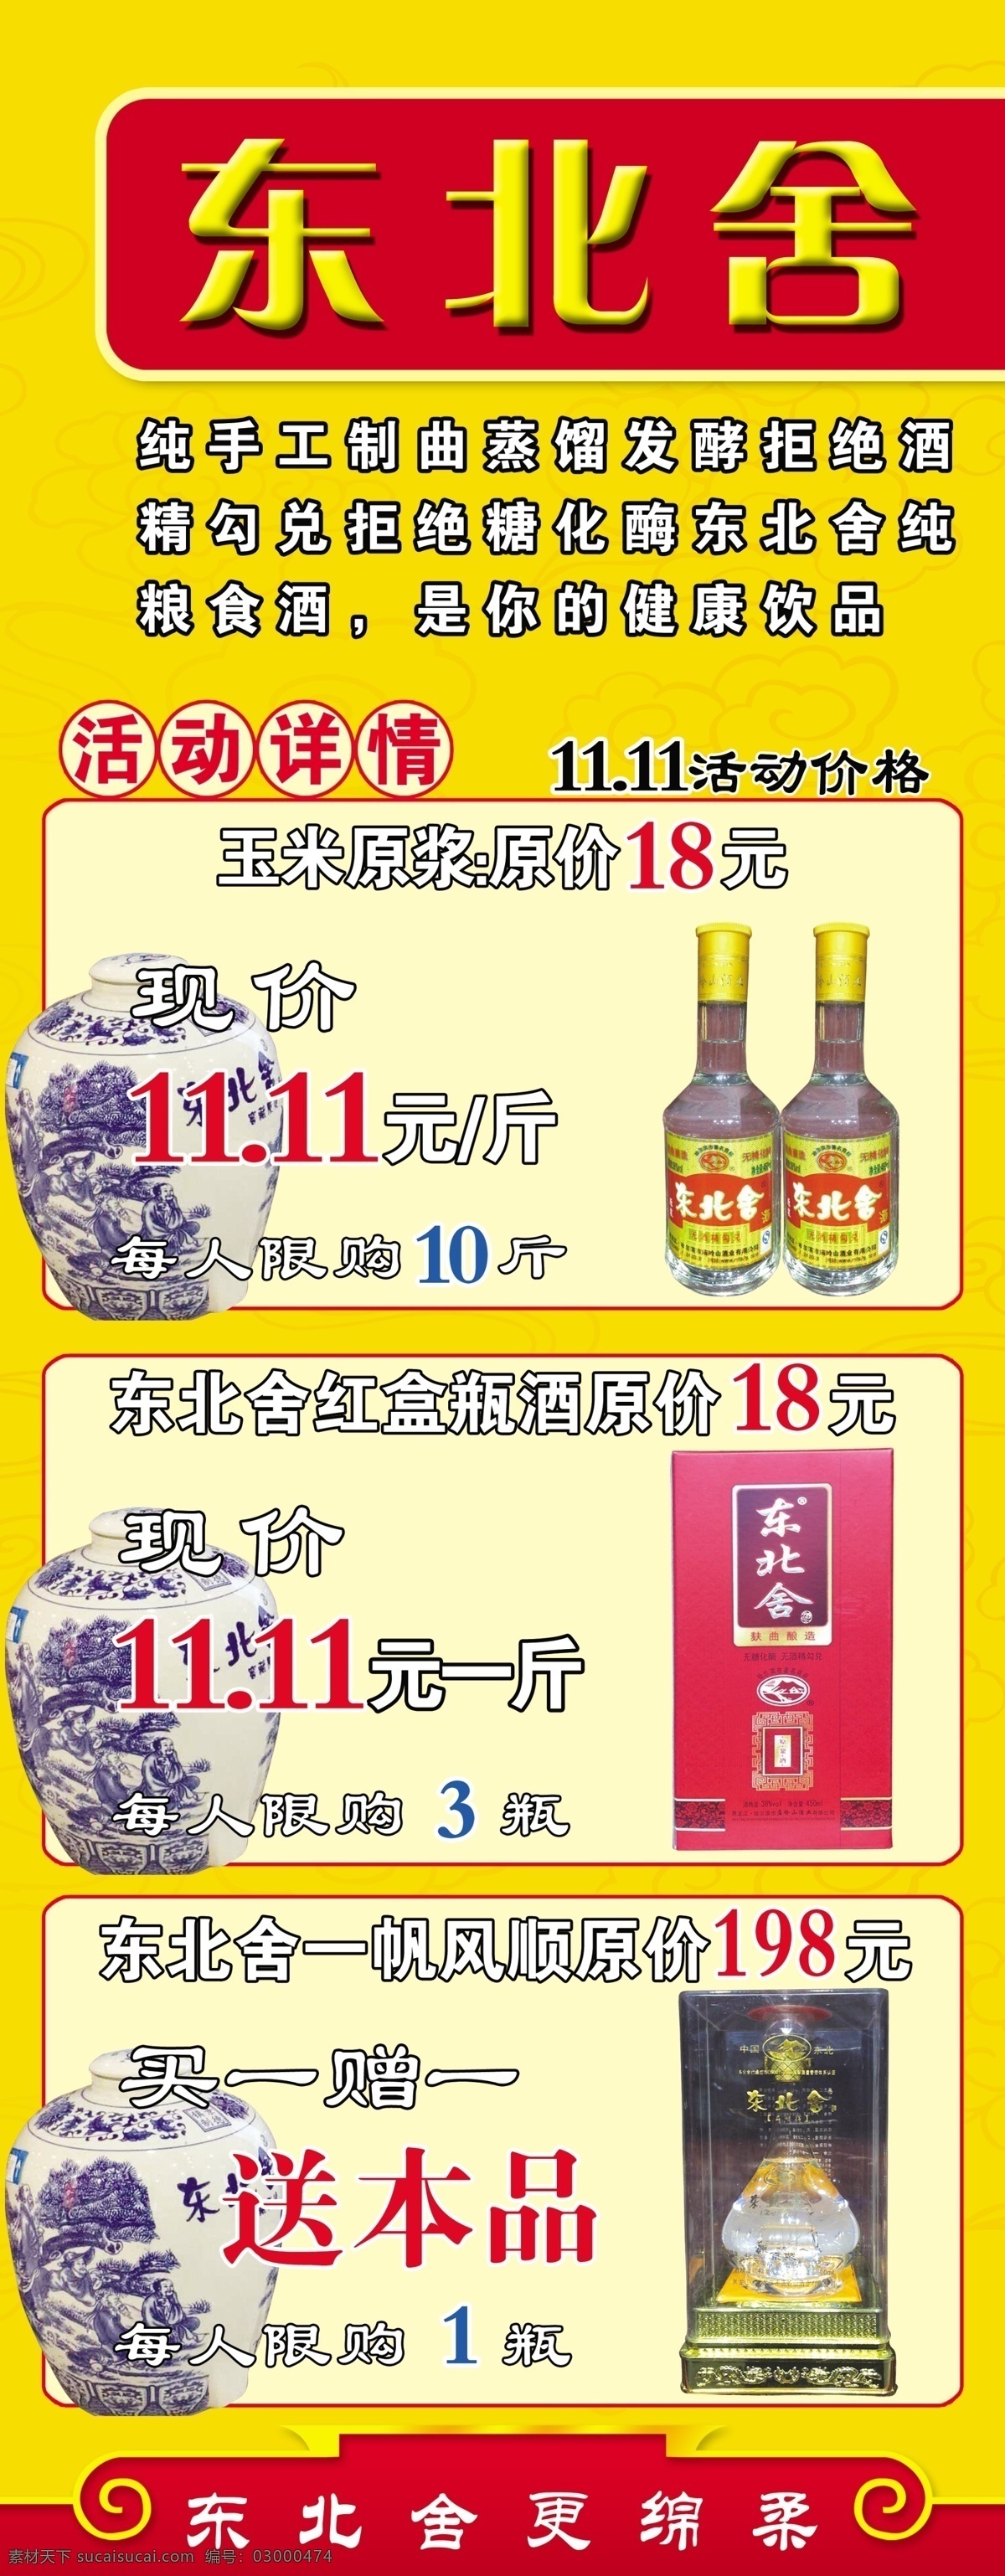 双11宣传板 双11 节日 酒饮 黄色